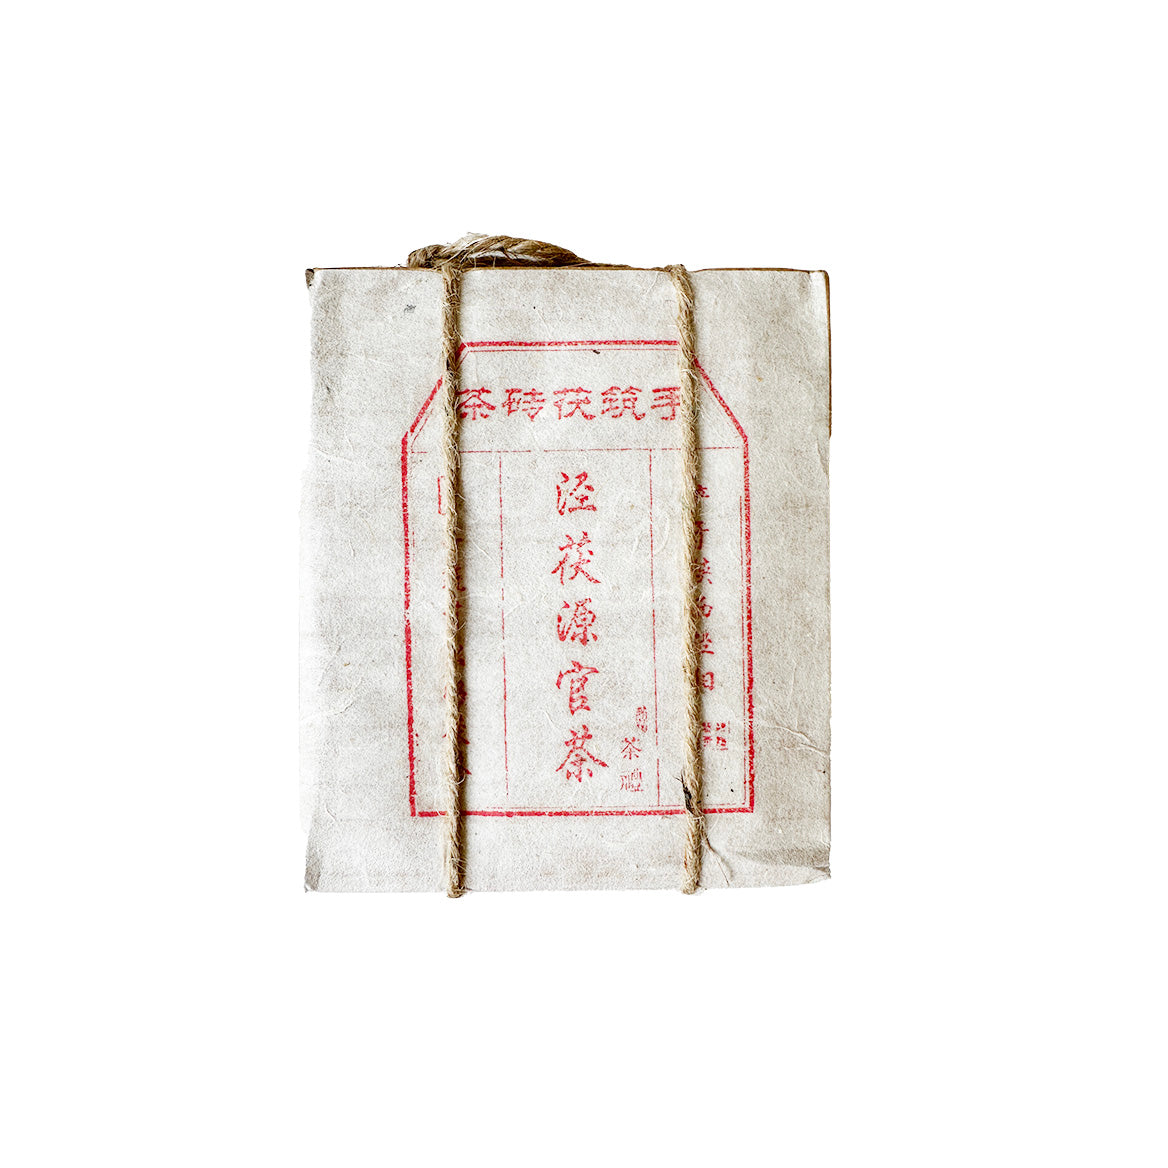 2016 Jing Fu Yuan Fu mursten - Fu Zhuan mørk te 450g